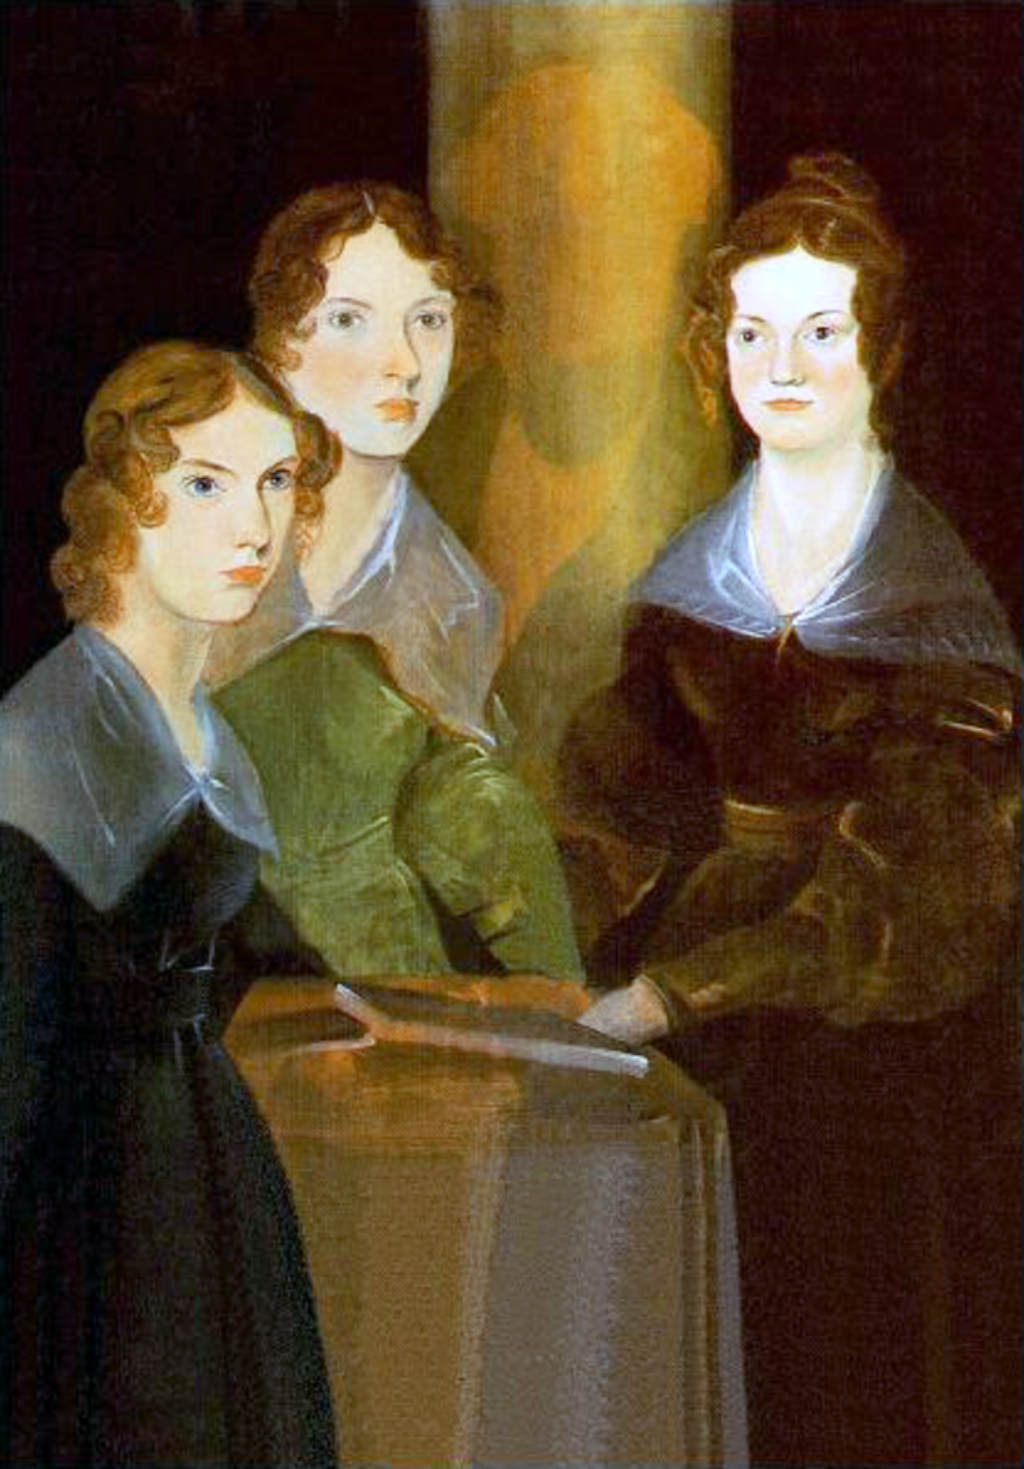 Retrato de las hermanas Brontë: Anna, Emily y Charlotte, realizado por su hermano Branwell en 1834. El pintor se borró, aparece como un halo entre Emily y Charlotte.